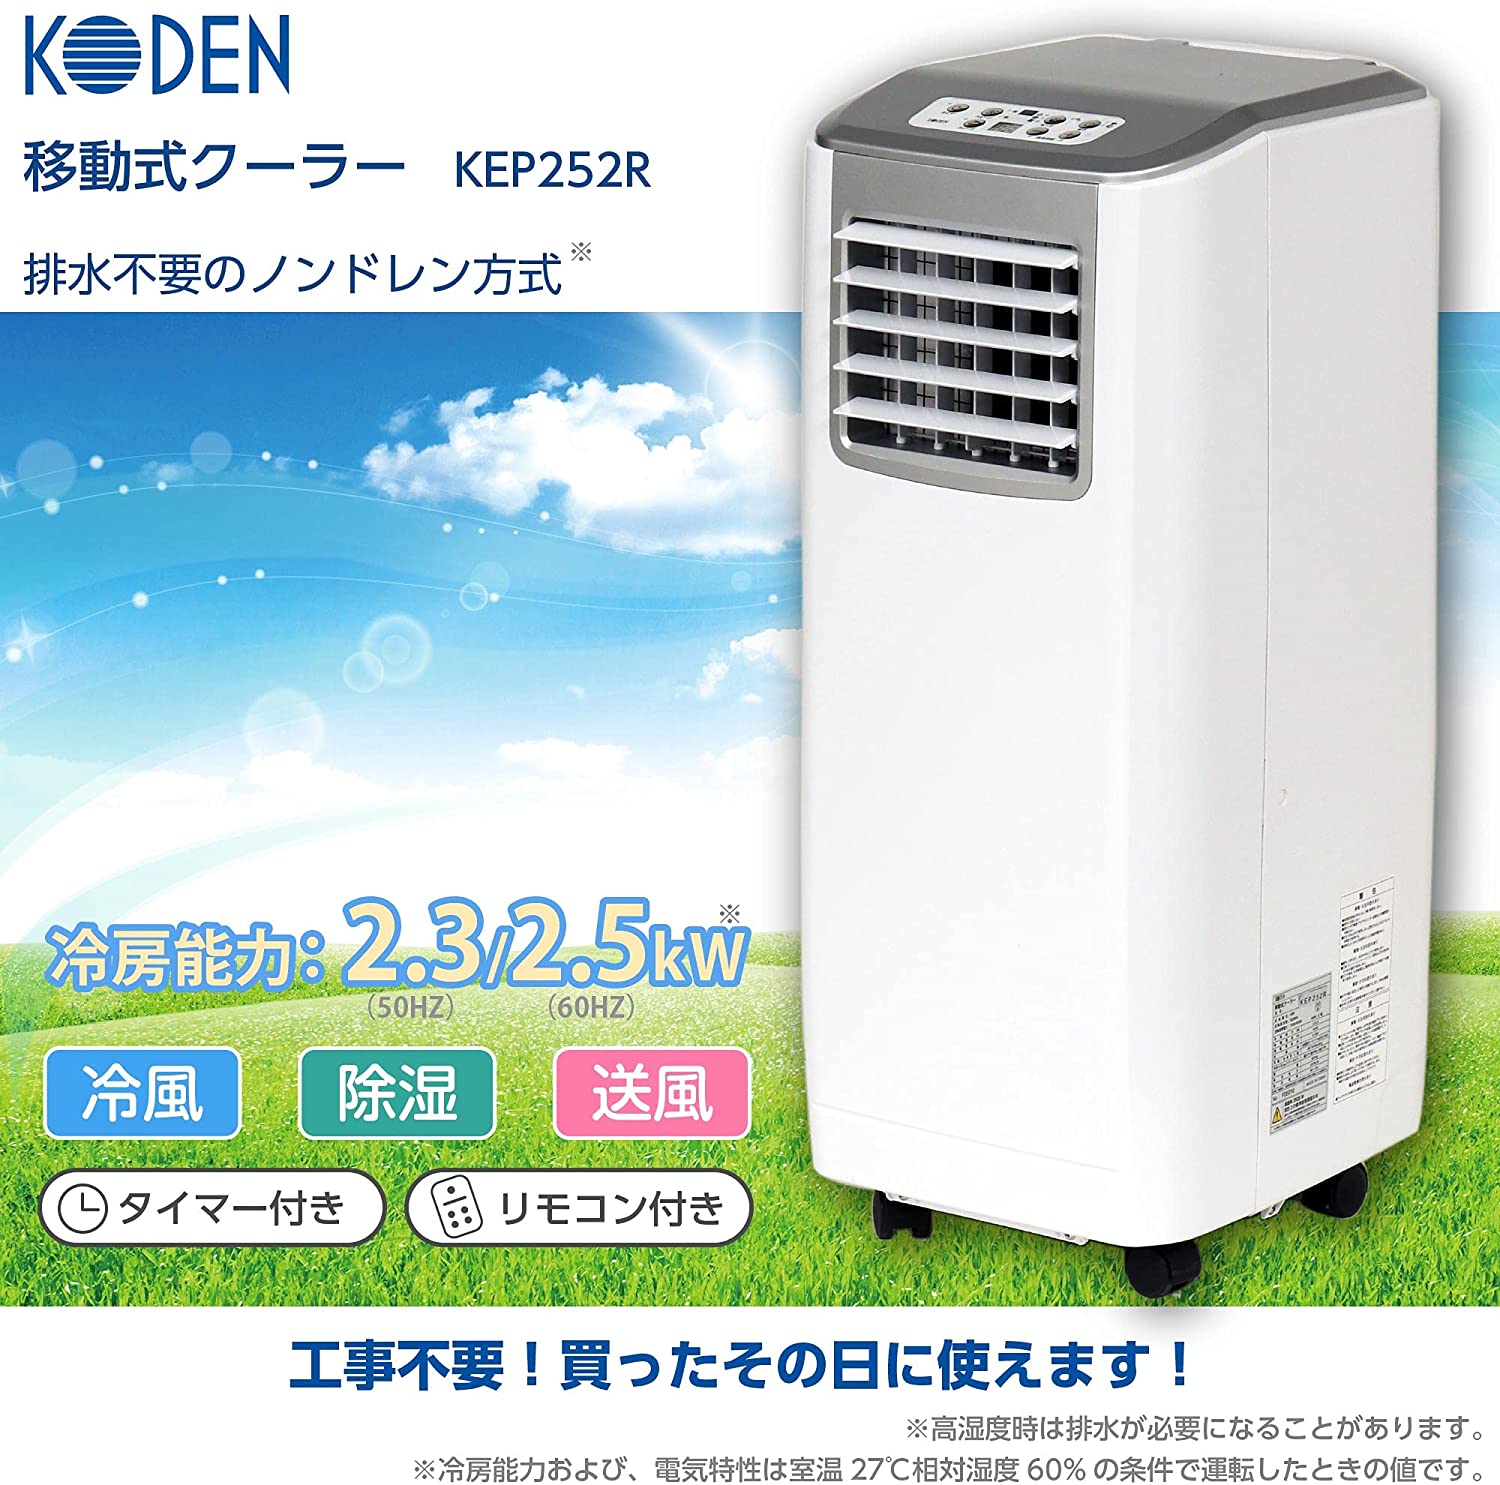 広電(KODEN) スポットエアコン KEP252R